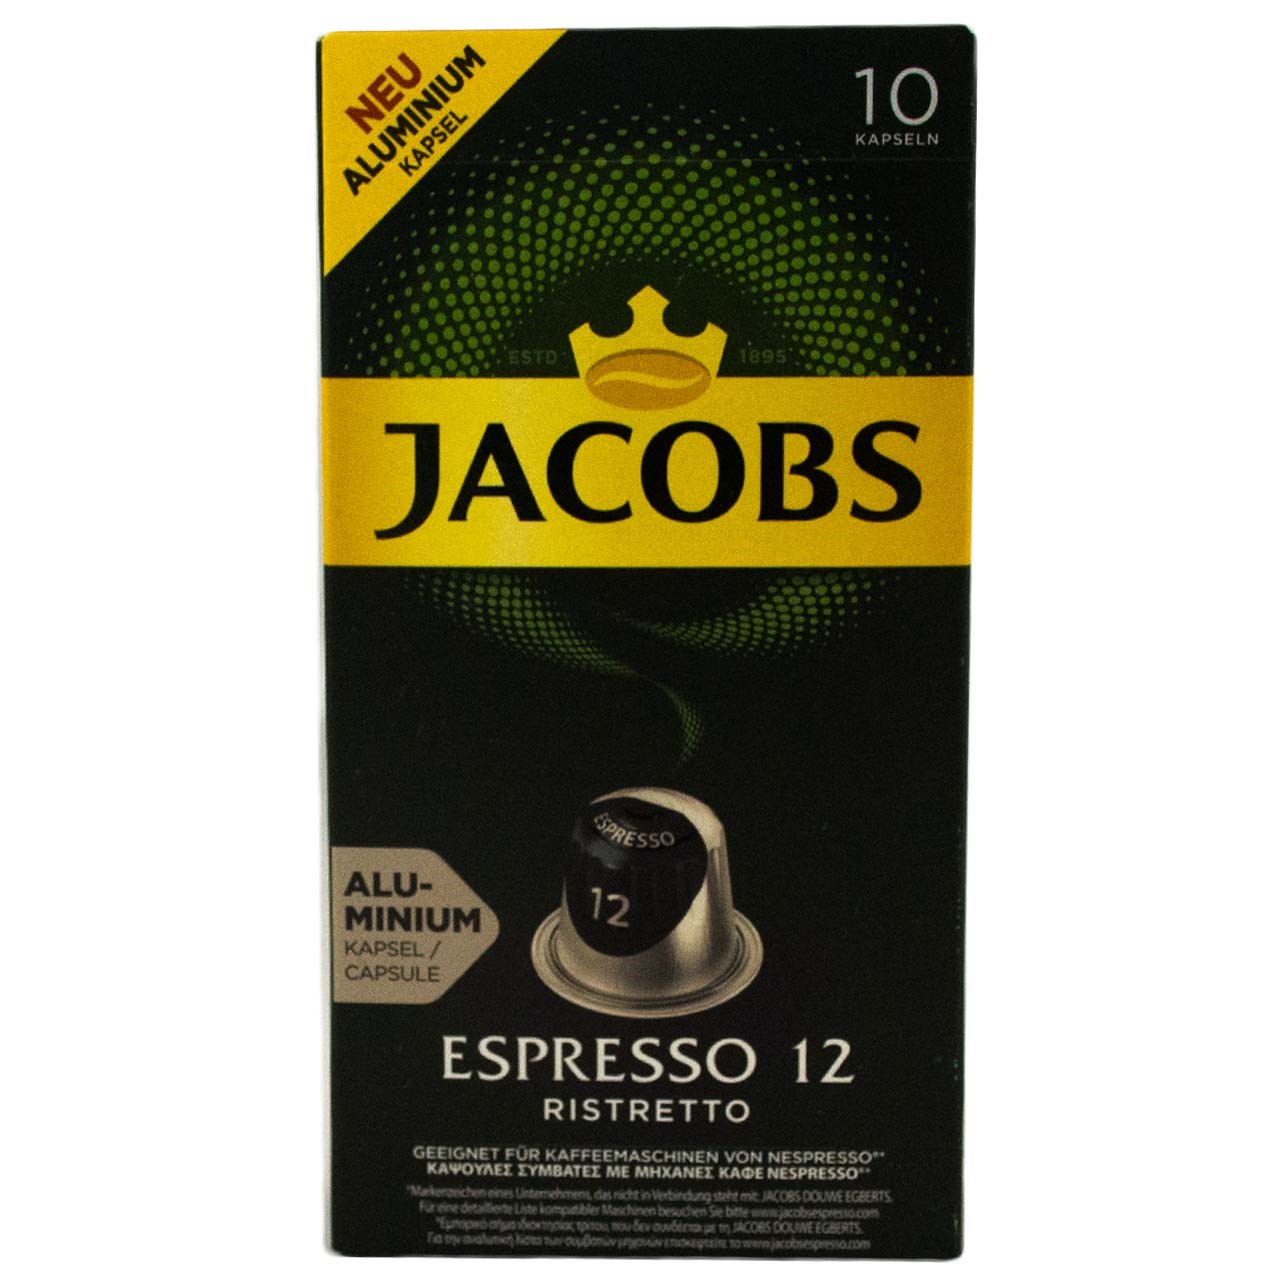 کپسول قهوه جاکوبز مدل Espresso Ristretto بسته 10 عددی